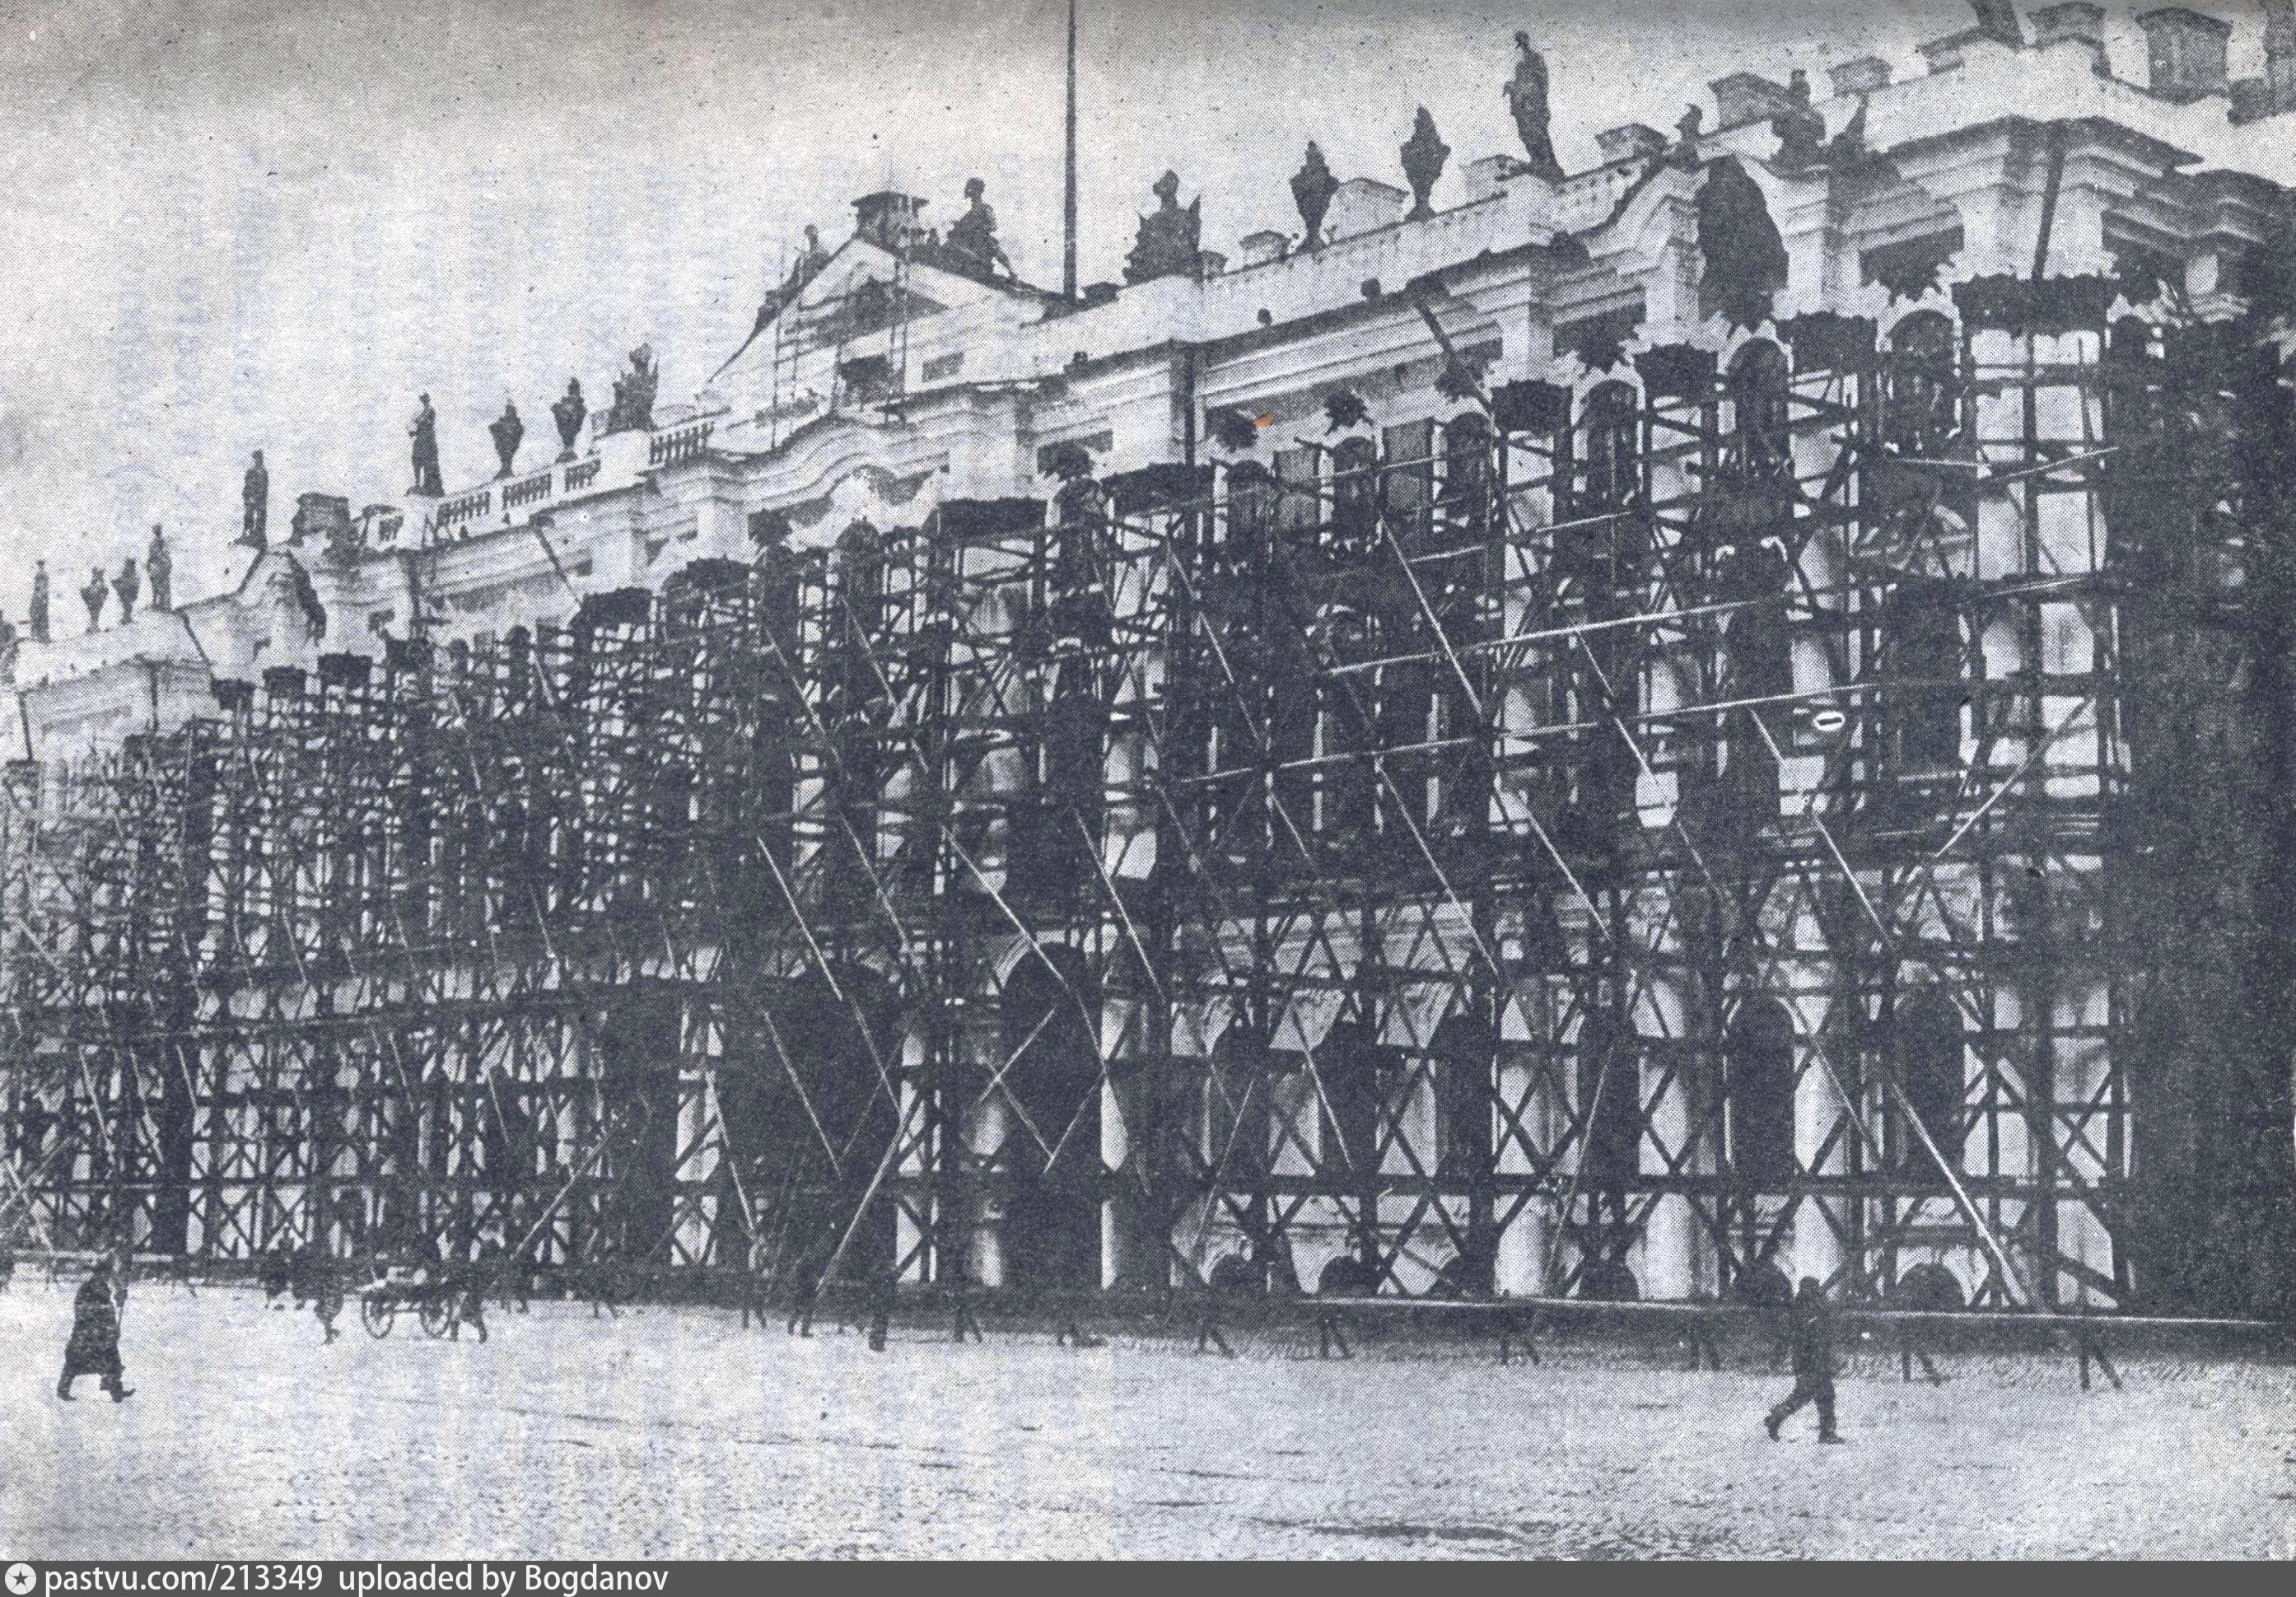 екатерининский дворец в годы войны